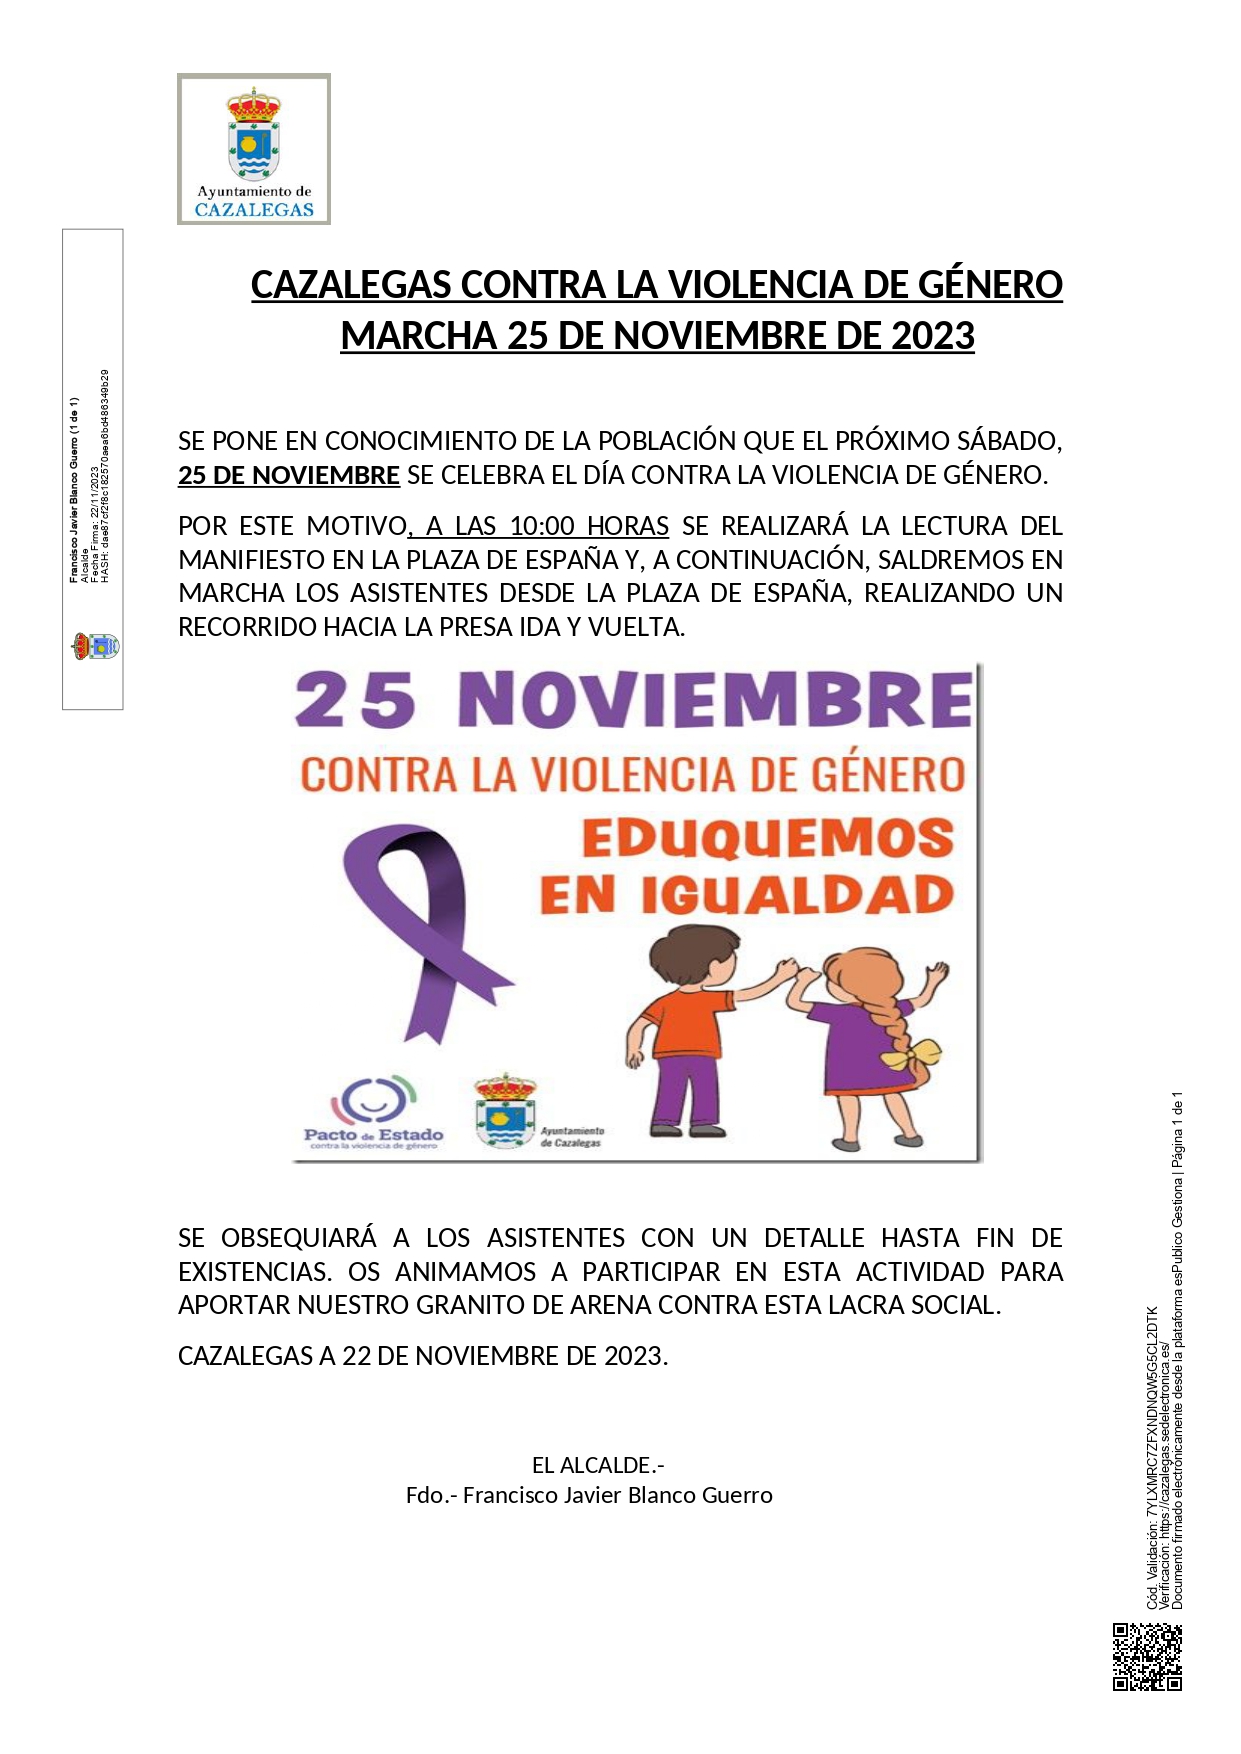 CAZALEGAS CONTRA LA VIOLENCIA DE GÉNERO. MARCHA 25/11/2023 10.00H.